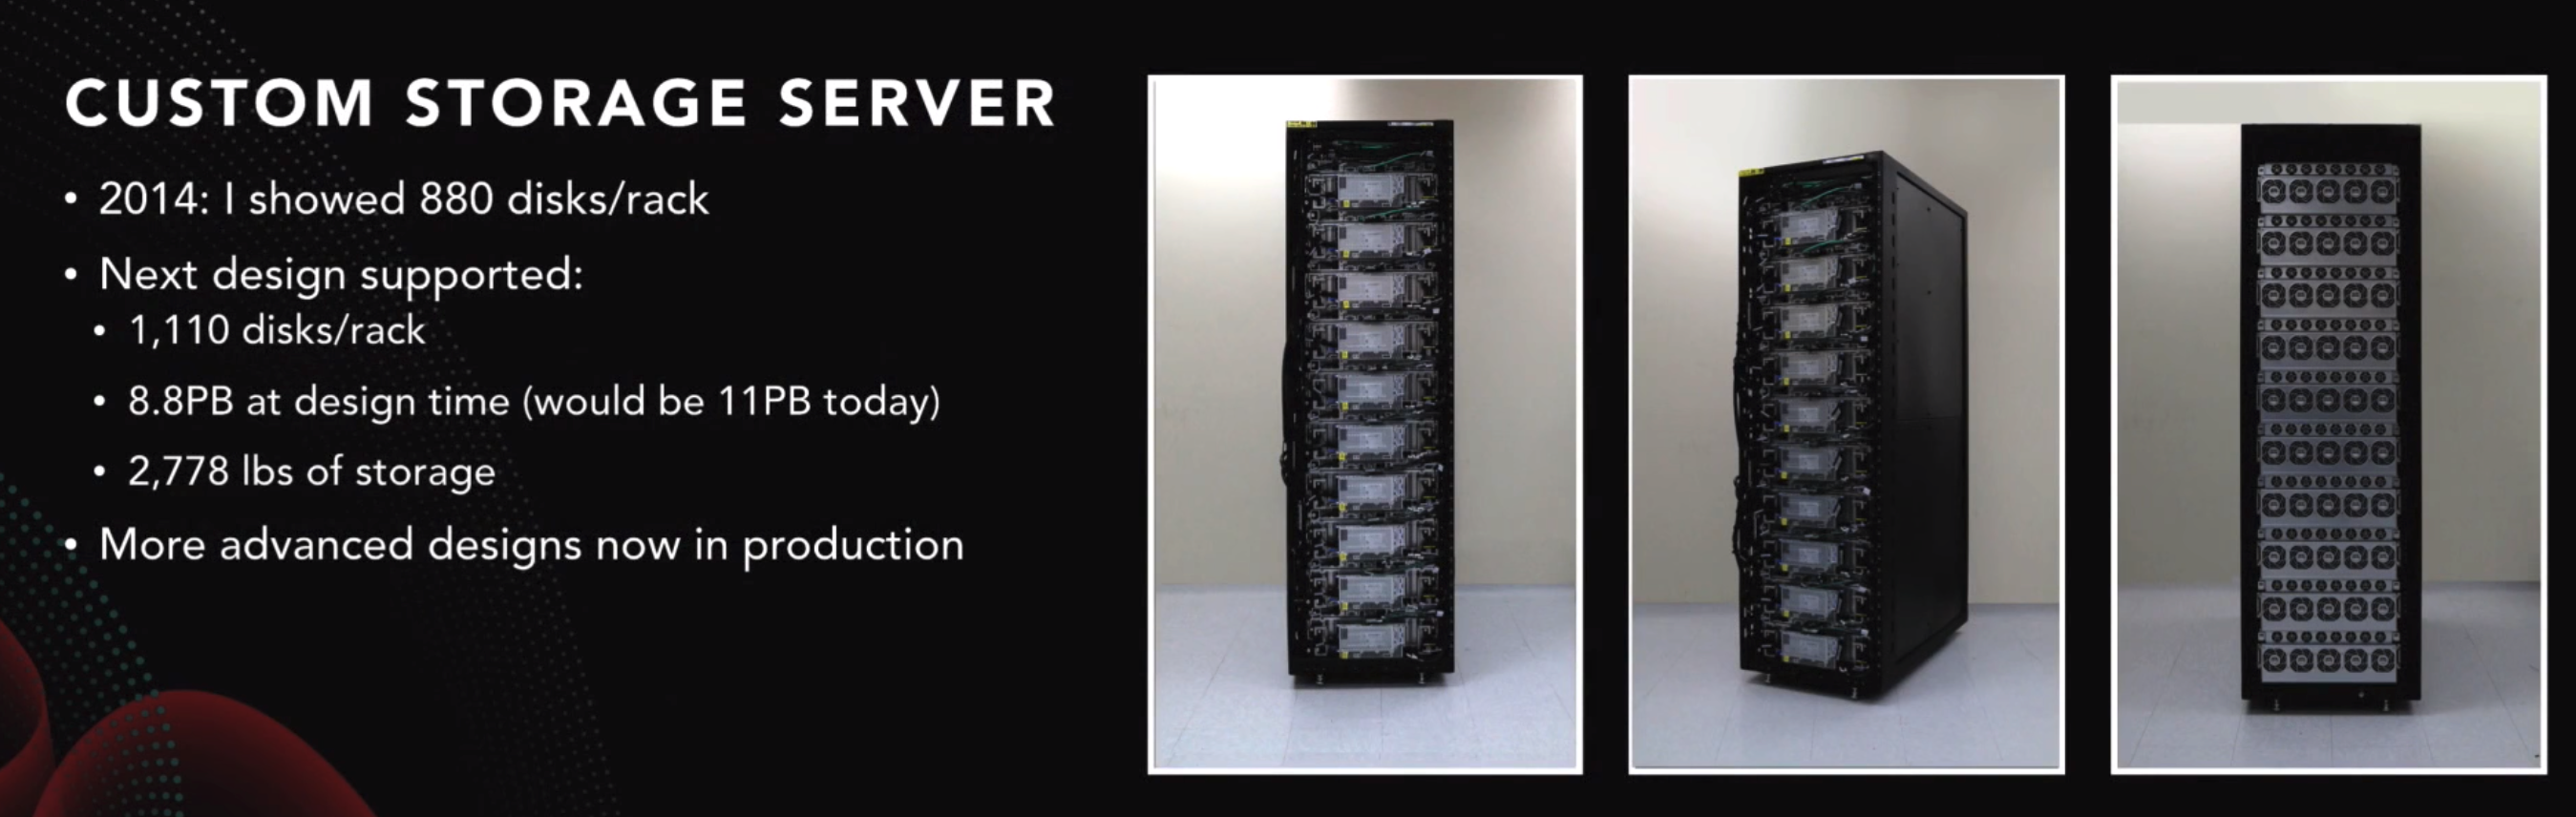 aws storage server